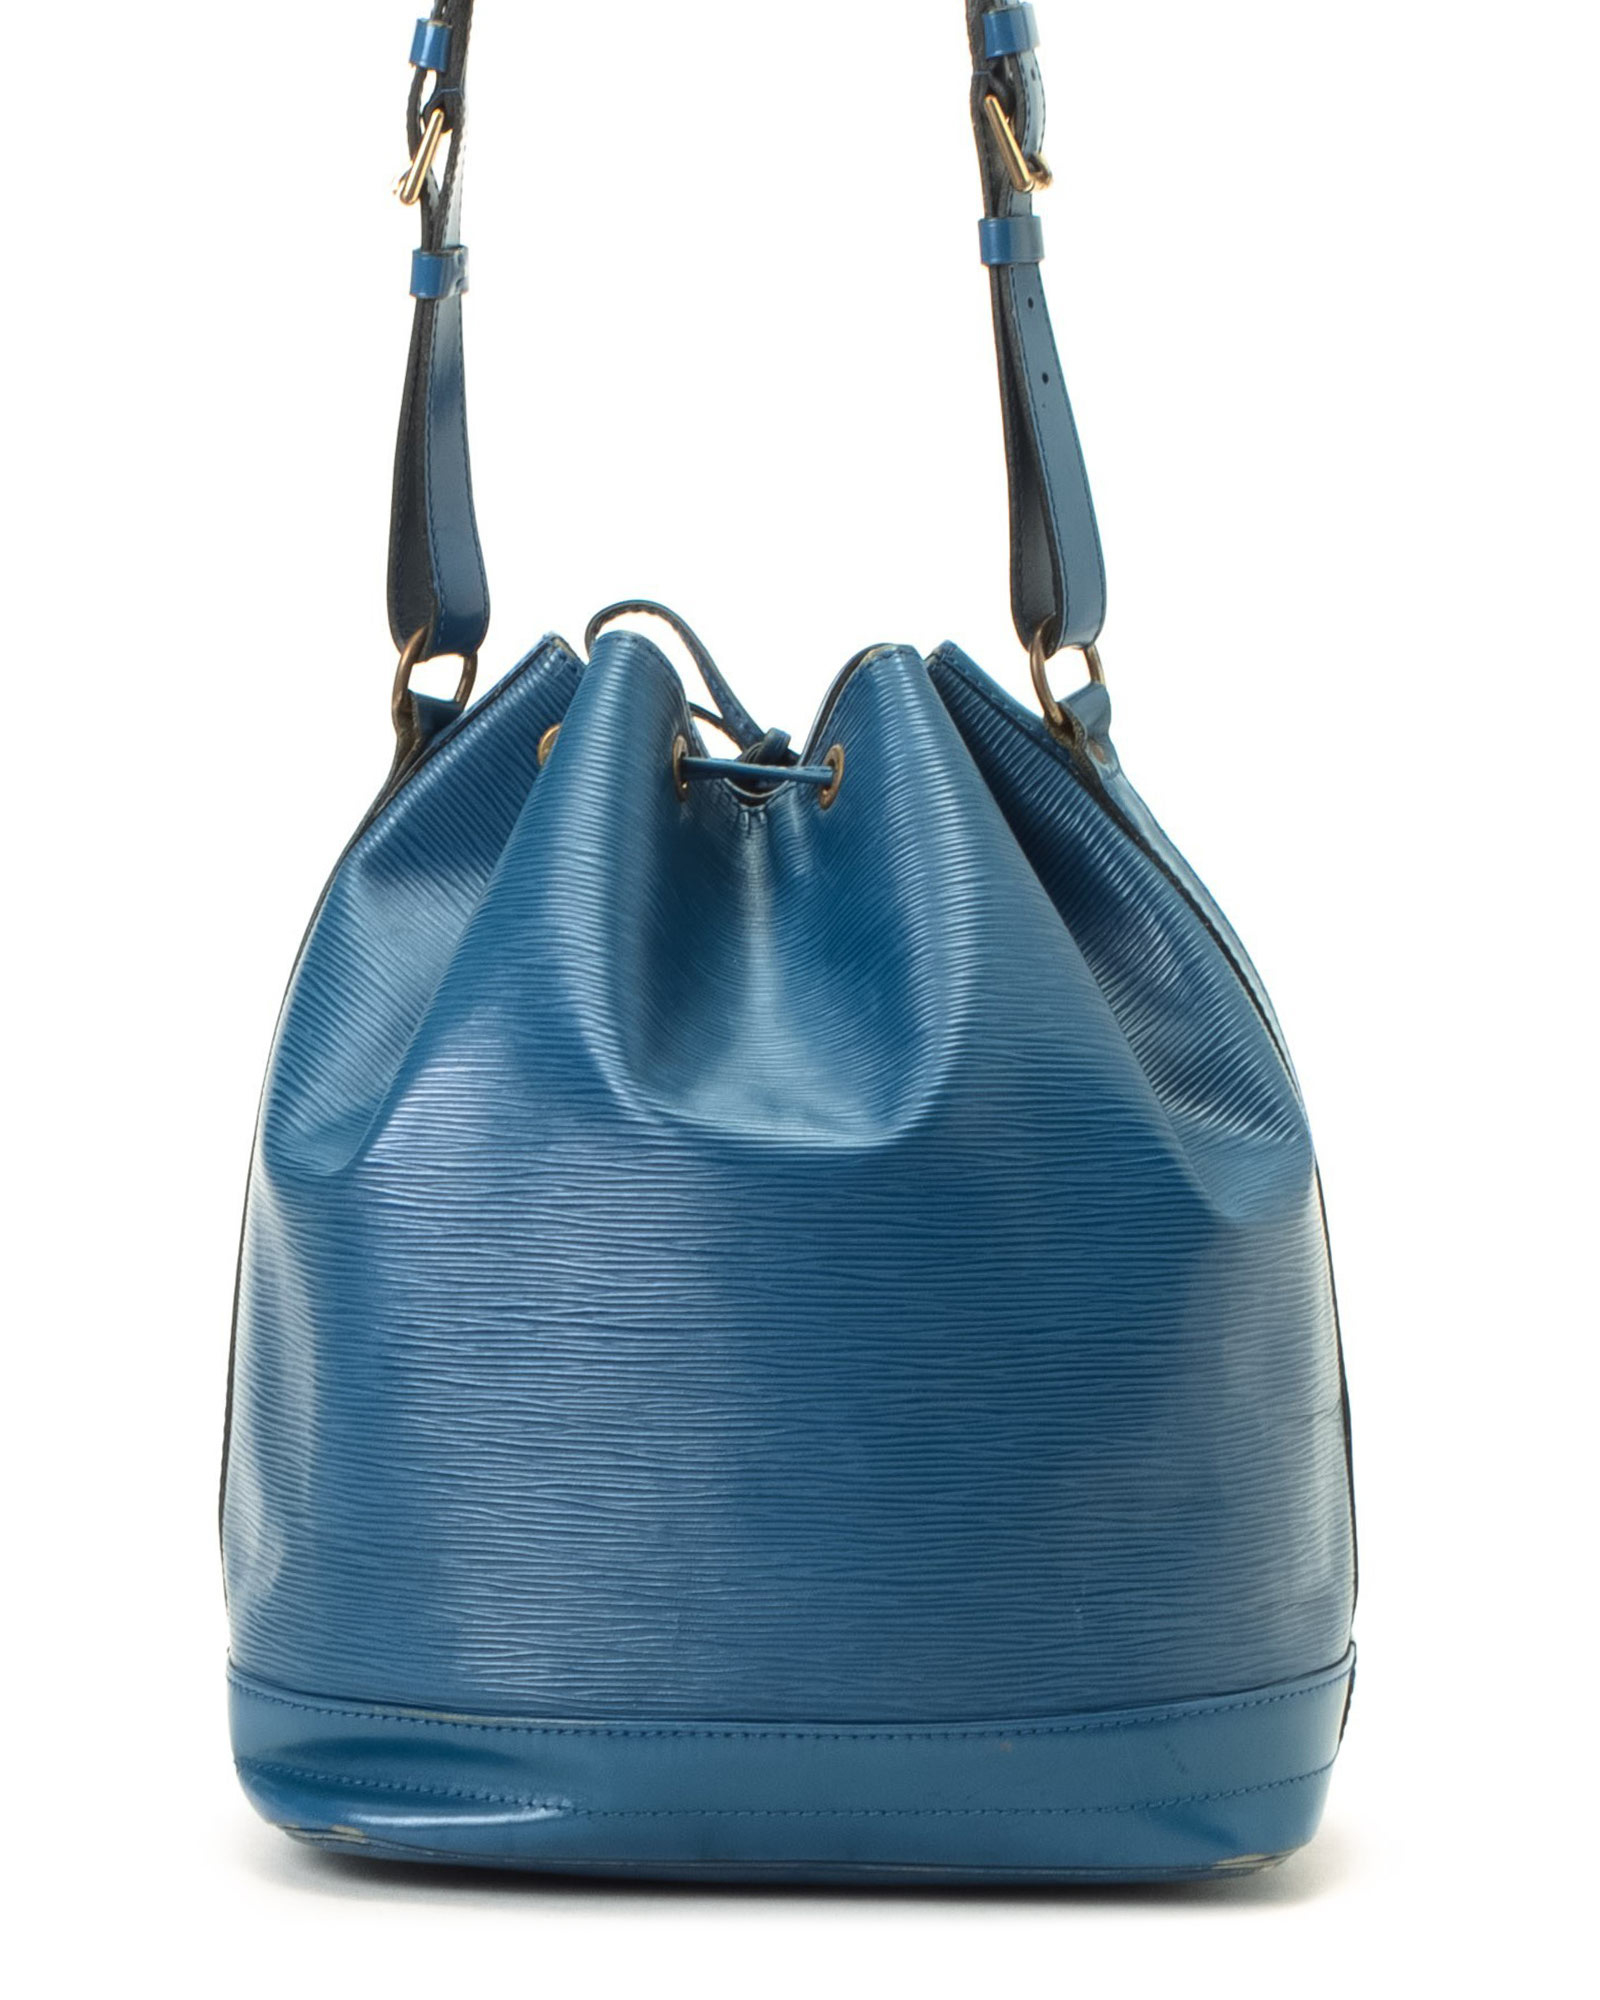 Louis Vuitton Blue Lace Purse | NAR Media Kit